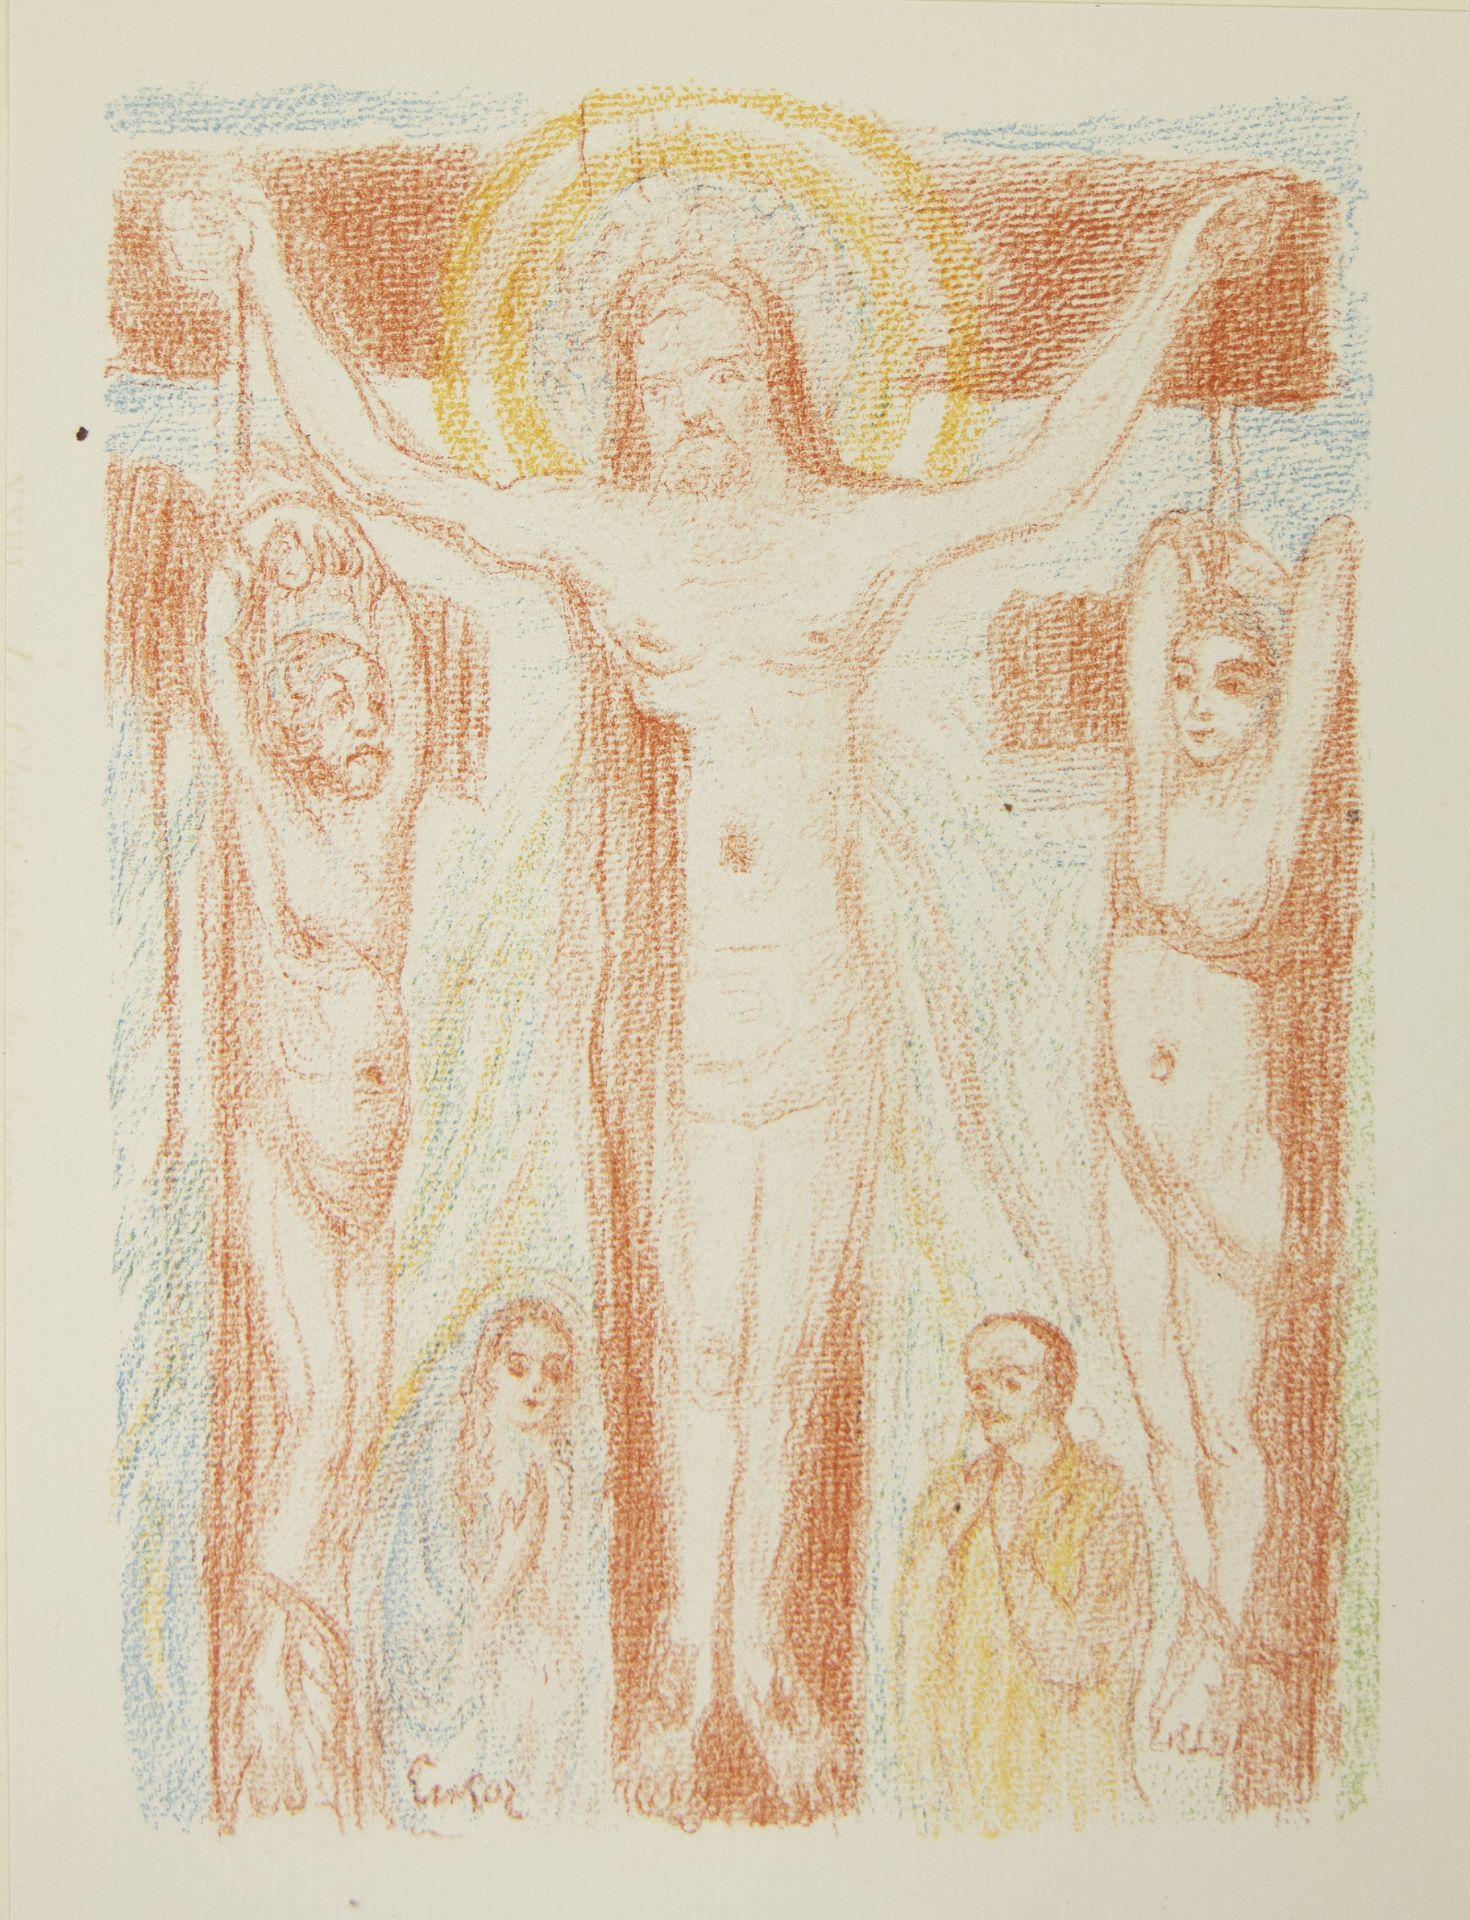 James ENSOR (1860-1949), lithograph from the series Scènes de la vie du Christ, Le Christ entre les